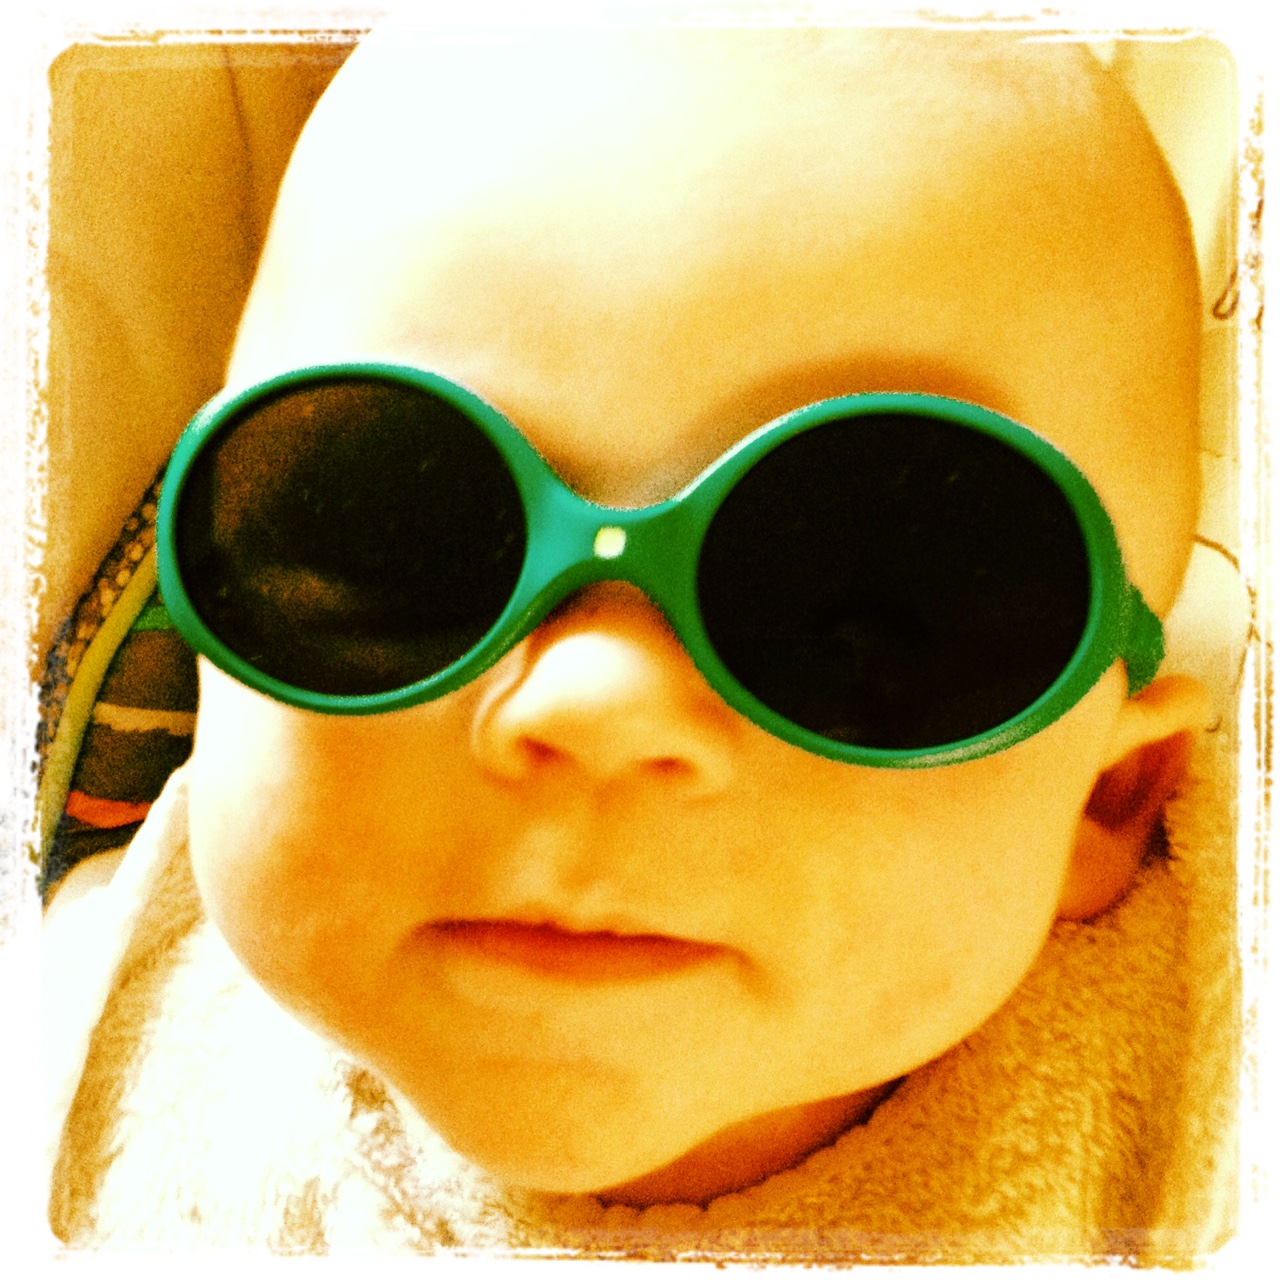 Bébé qui frime avec ses premières lunettes de soleil